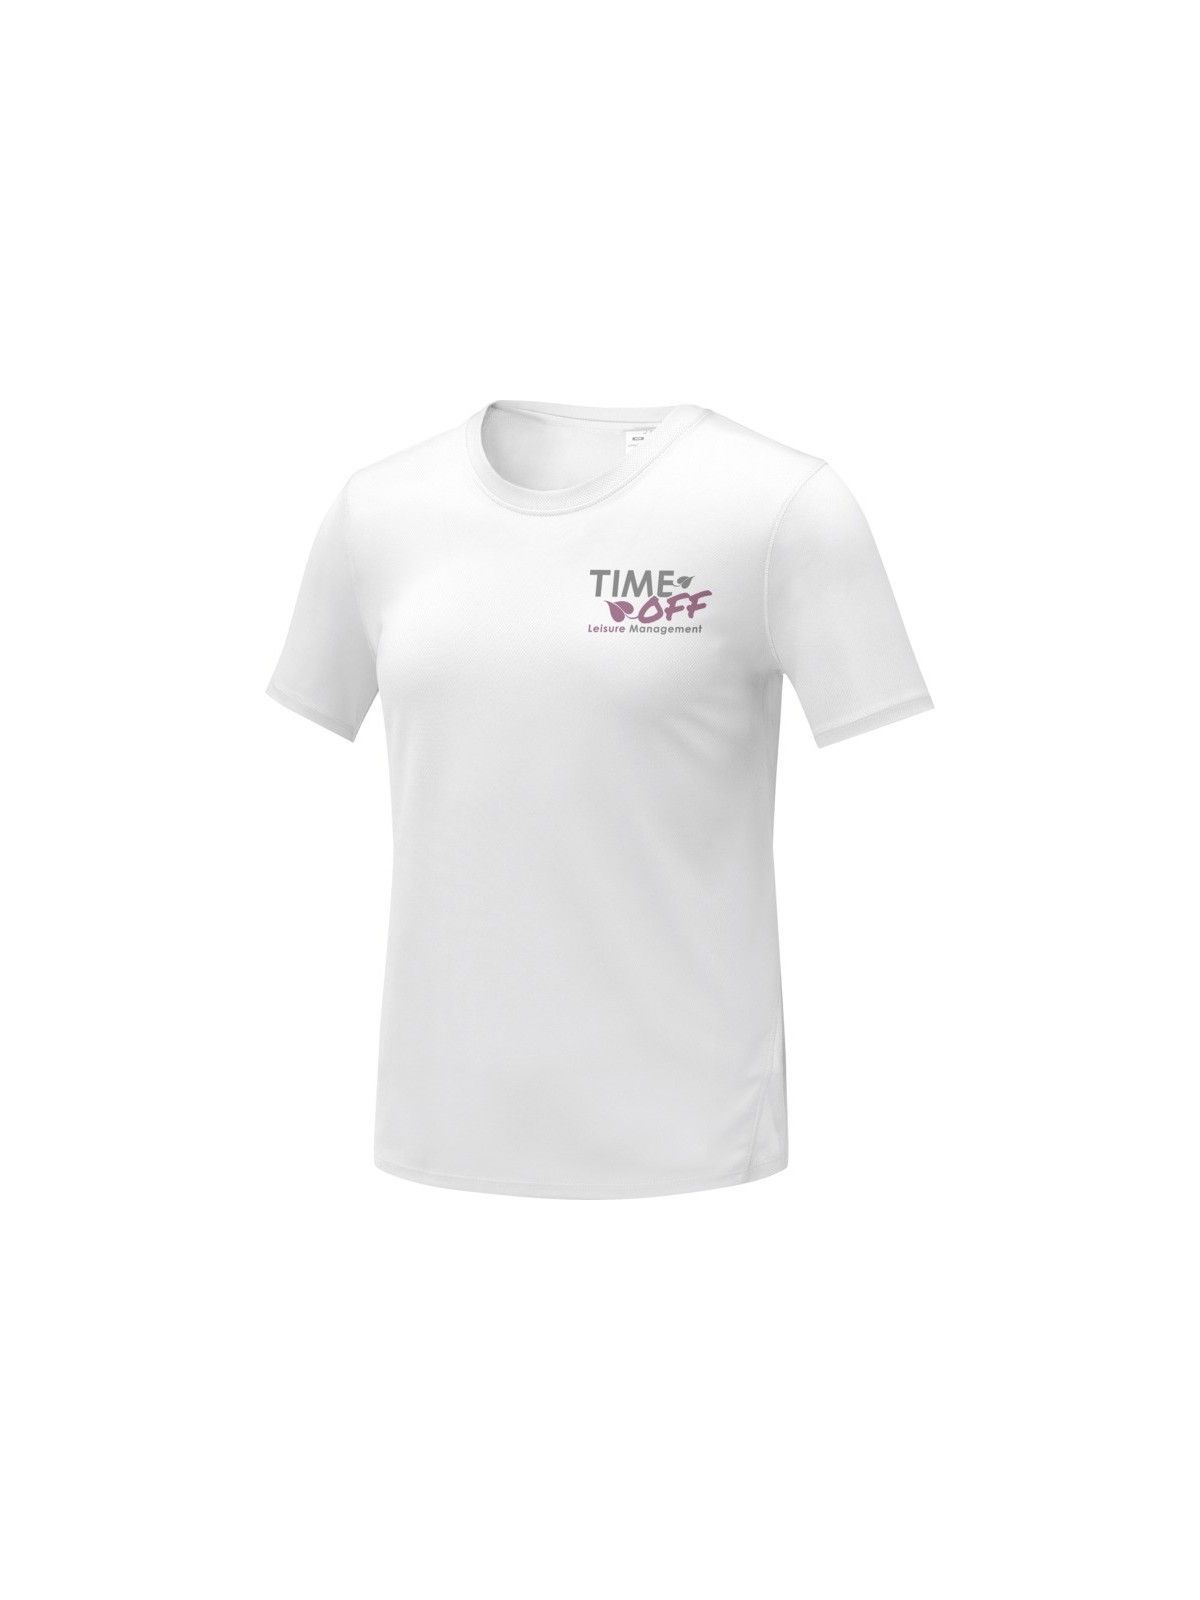 10-136 T-shirt à manches courtes cool fit pour femme personnalisé